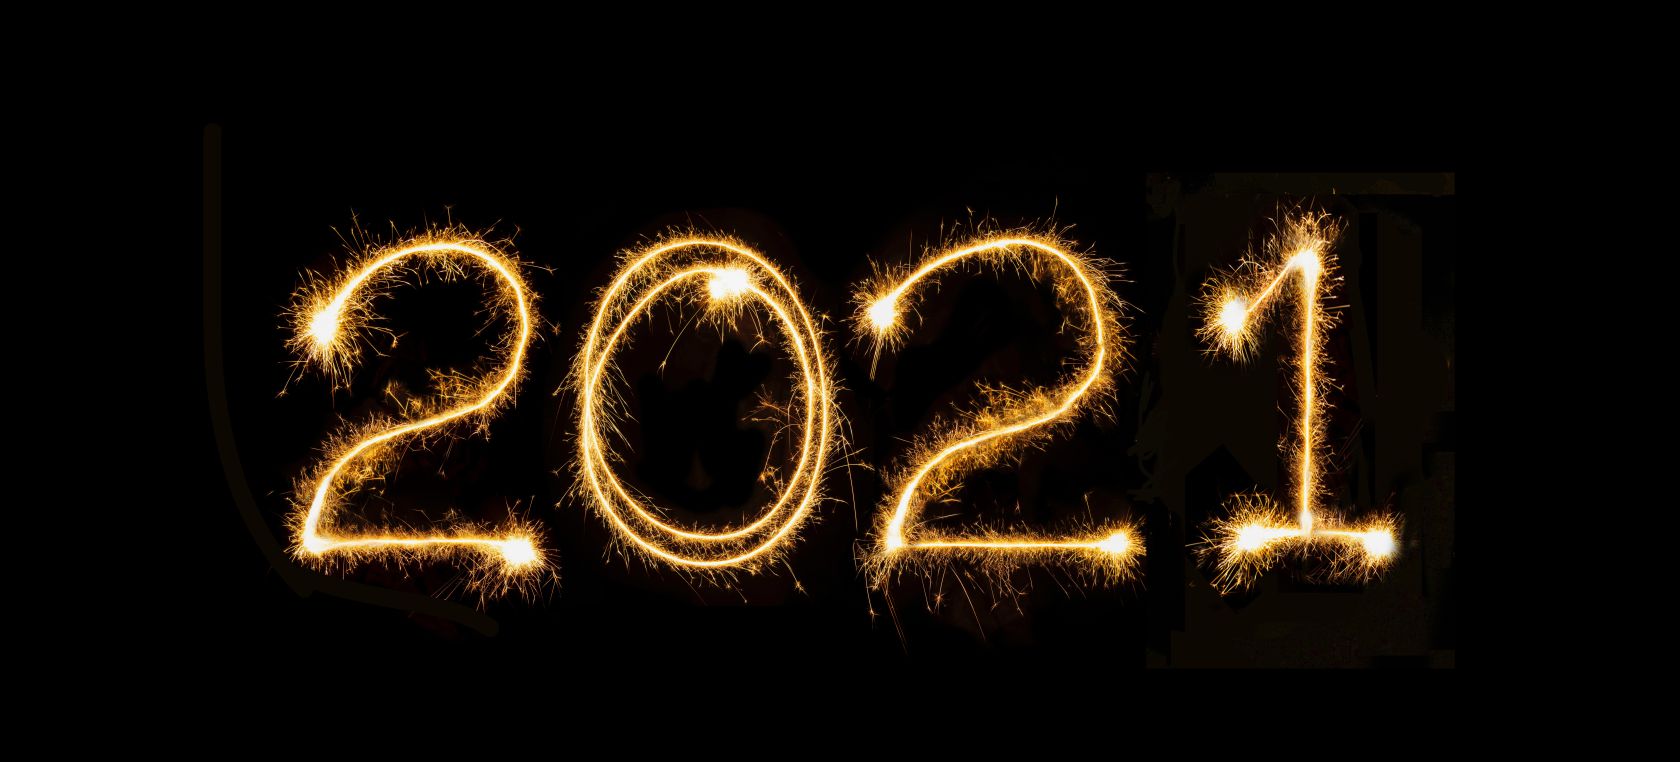 ¡Feliz Año Nuevo! 21 ideas para felicitar el Año Nuevo 2021 por WhatsApp con frases, imágenes o memes